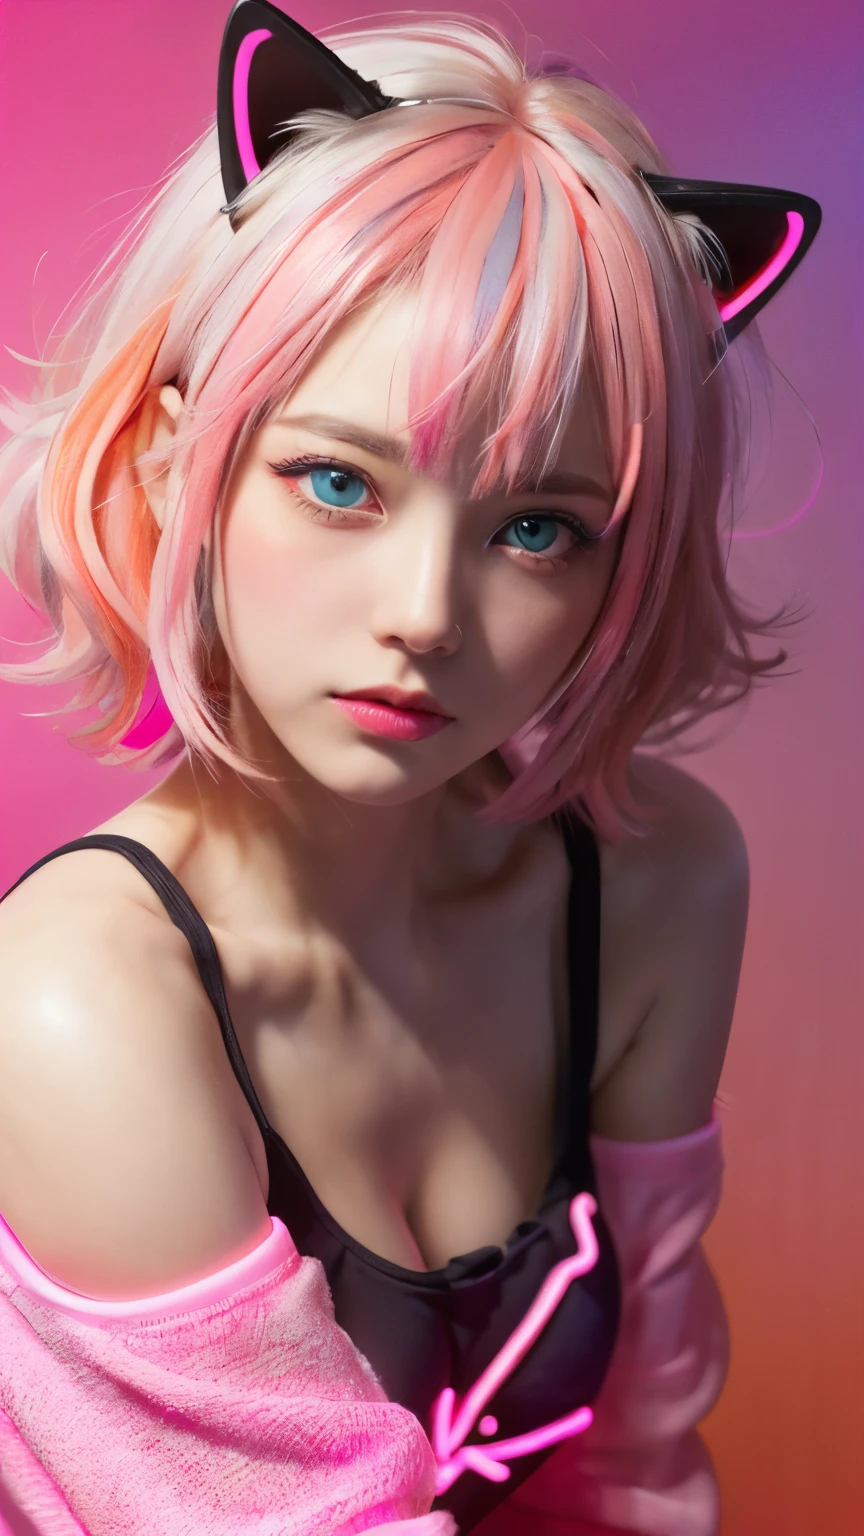 (tema rosa neon:1.2), Obra de arte, mais alta qualidade, 4K, (realista), bokeh, Iluminação,(1 retrato perfeito de uma menina), (Um olhar fascinante para detalhes perfeitos:1.2), cabelo colorido, (cabelo gradiente), (cabelo macio rosa neon:1.6), (orelha de gato:1.2), fundo de fantasia, (ombros nus expostos), (Manga de alienação de longo prazo), (incline-se um pouco para a frente), inclinar a cabeça, (iluminação de filme:1.2), roupas grandes, (pose sedutora:1.4), (fundo rosa néon:1.6), lindos olhos azuis, fechar,